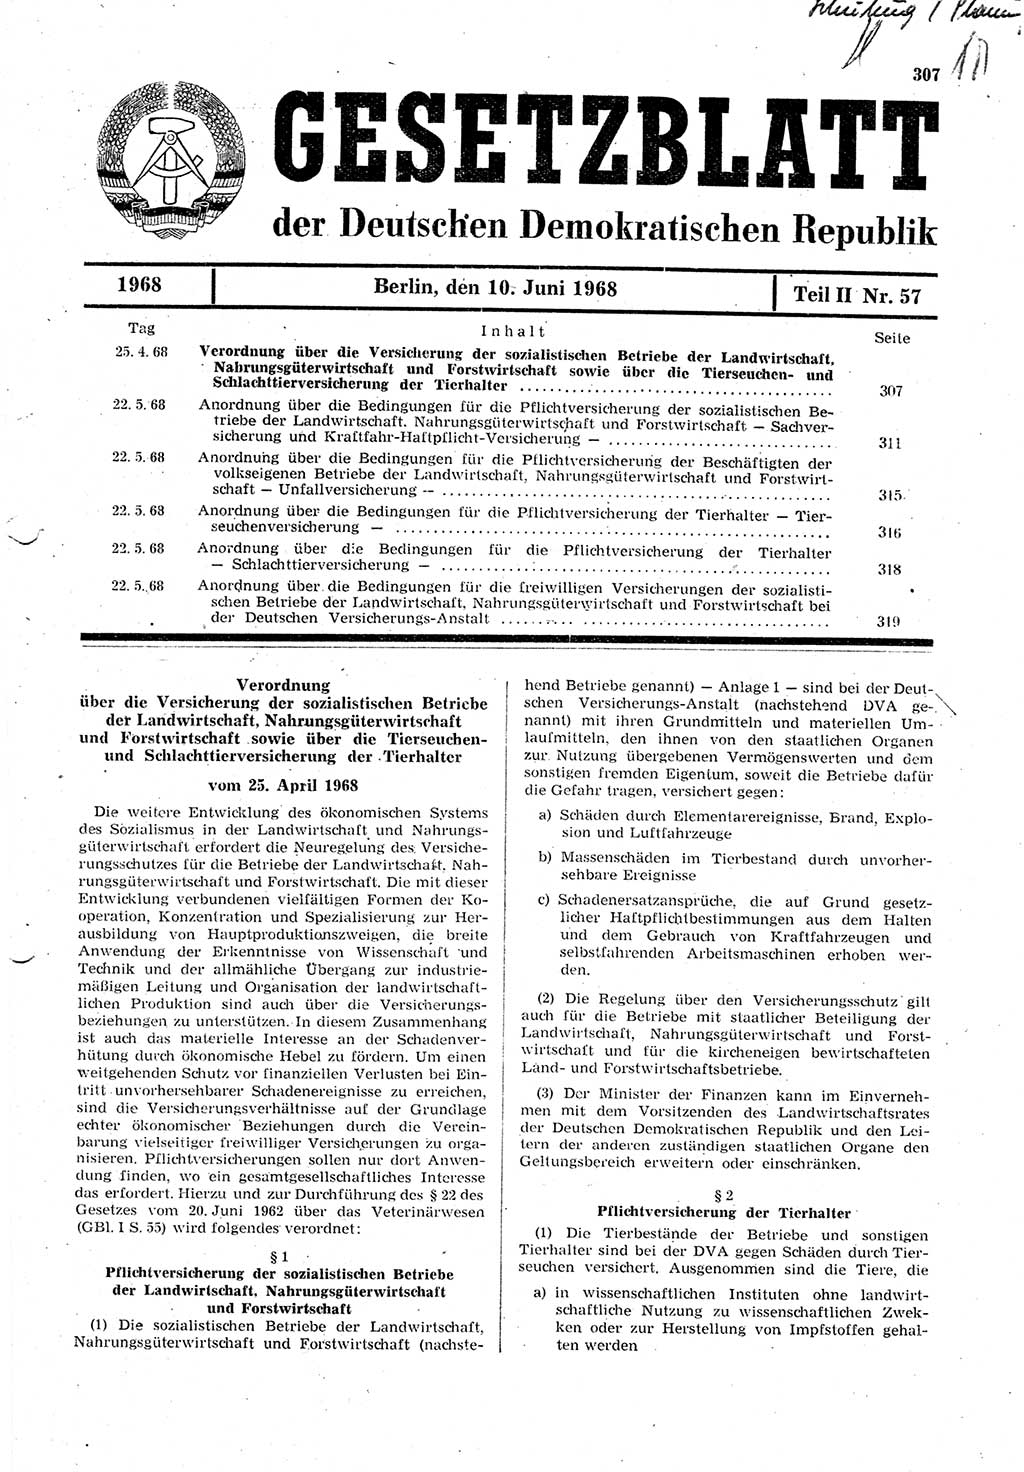 Gesetzblatt (GBl.) der Deutschen Demokratischen Republik (DDR) Teil ⅠⅠ 1968, Seite 307 (GBl. DDR ⅠⅠ 1968, S. 307)